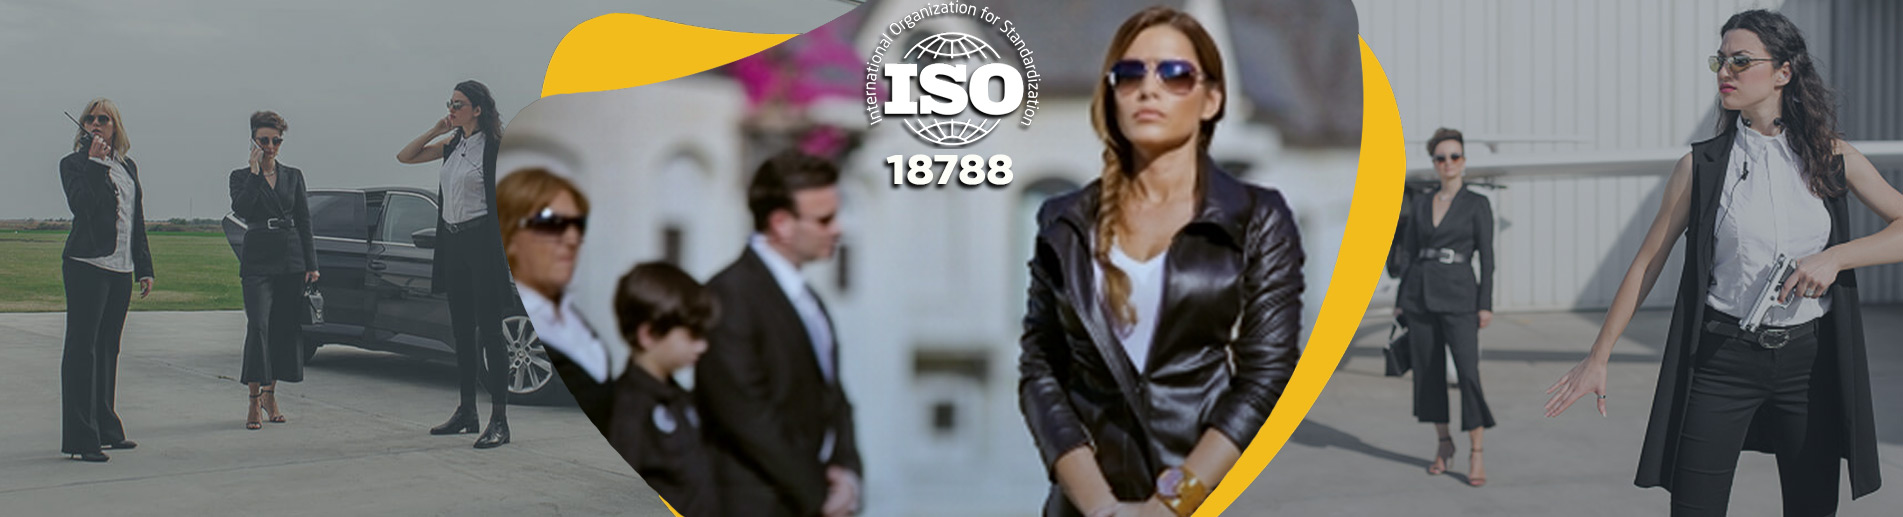 ISO 18788 Özel Güvenlik Operasyon